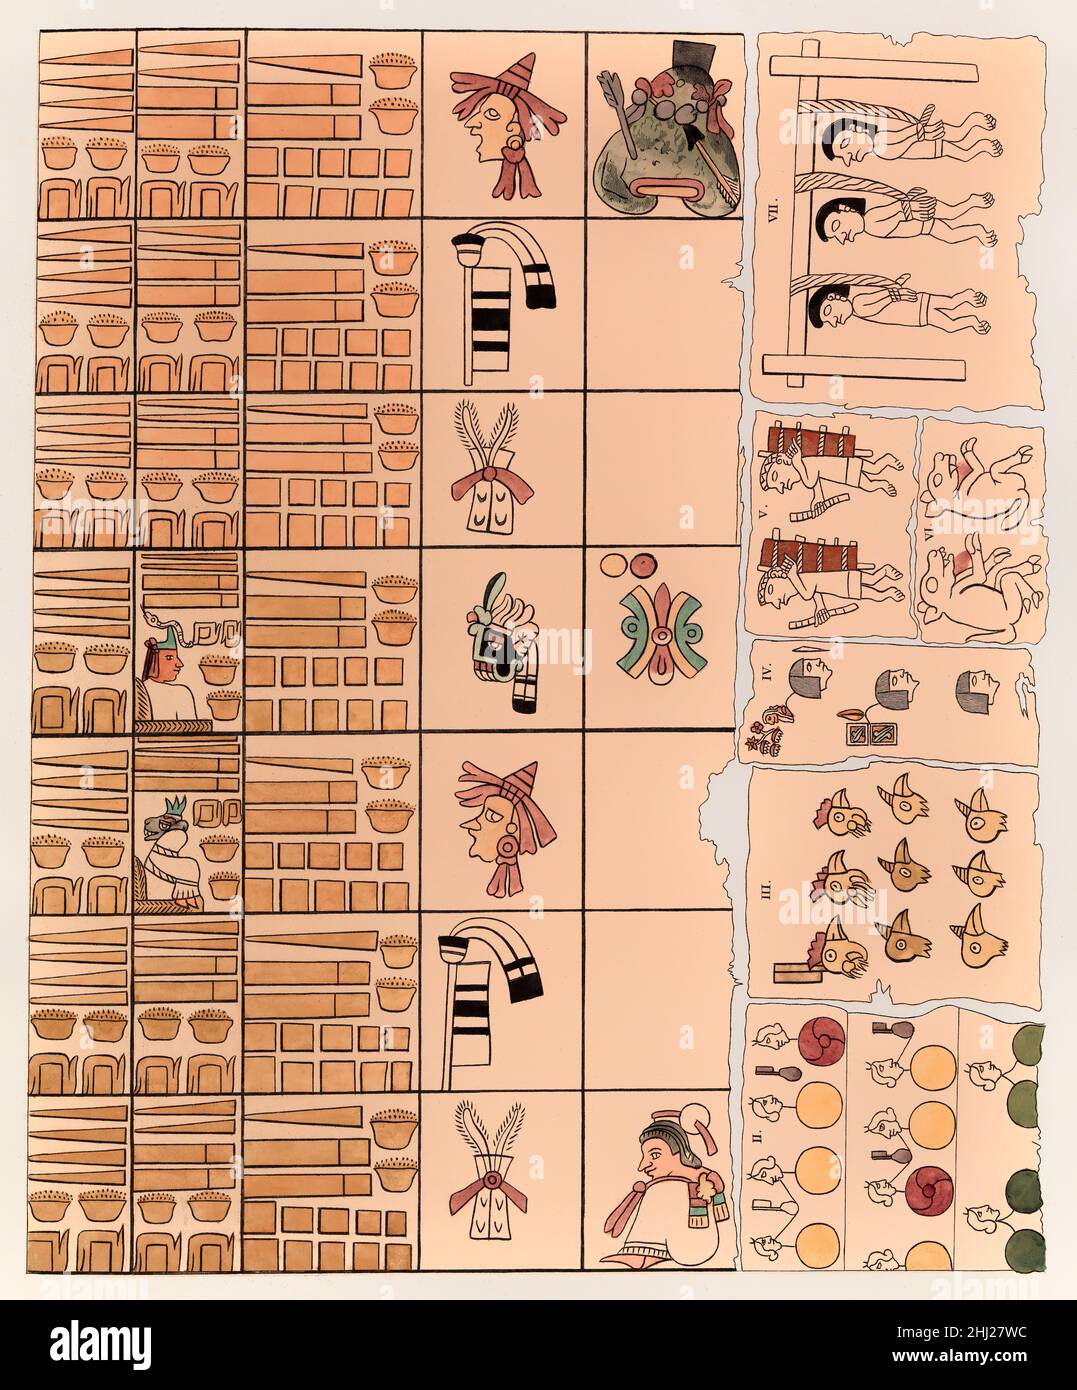 Hiéroglyphes d'Aztec, télécopie de l'atlas pittesque par Alexander von Humboldt Banque D'Images